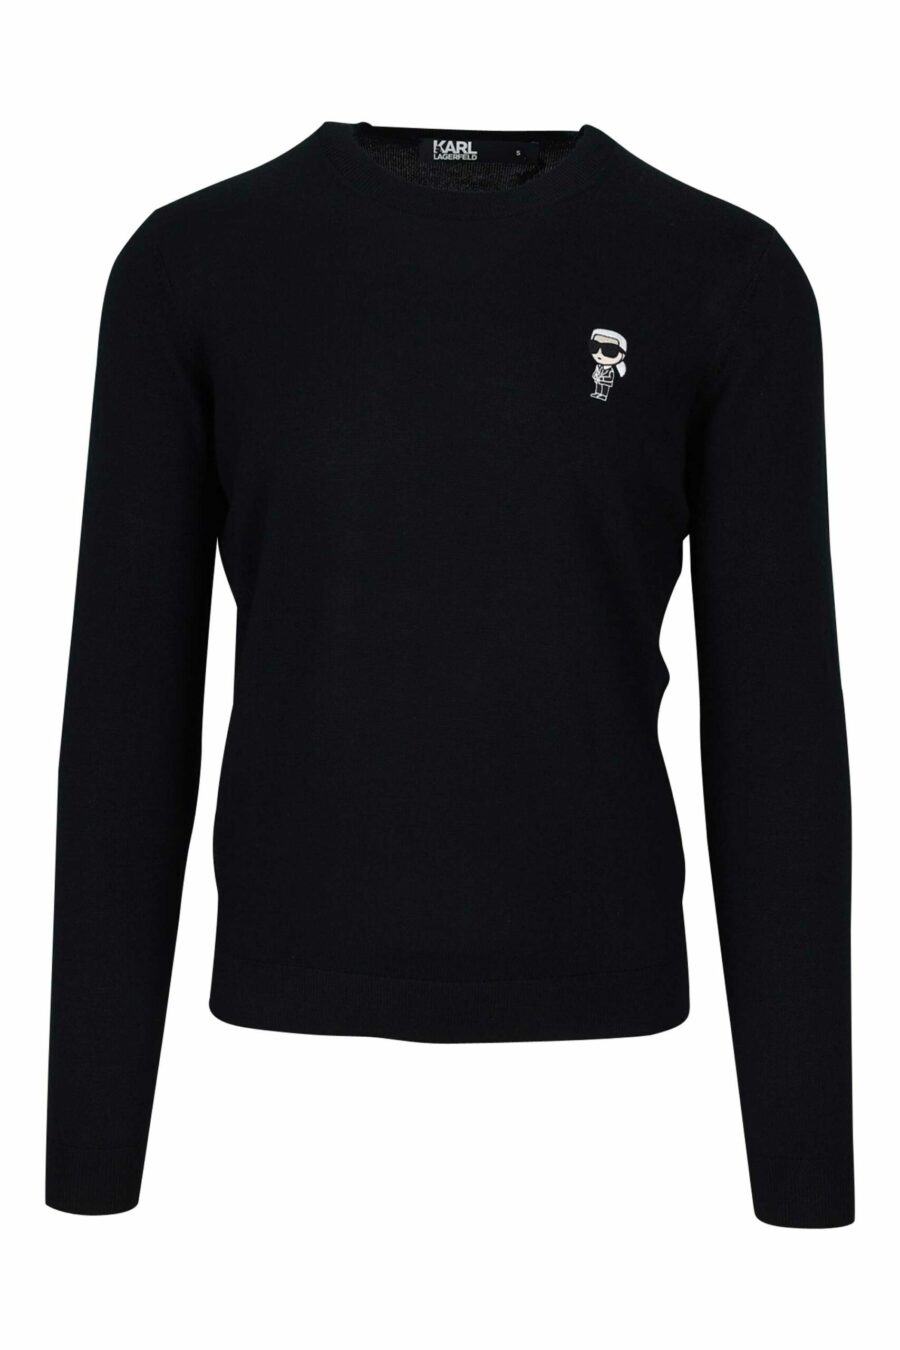 Schwarzer Pullover mit gesticktem Mini-Logo - 4062226637664 skaliert